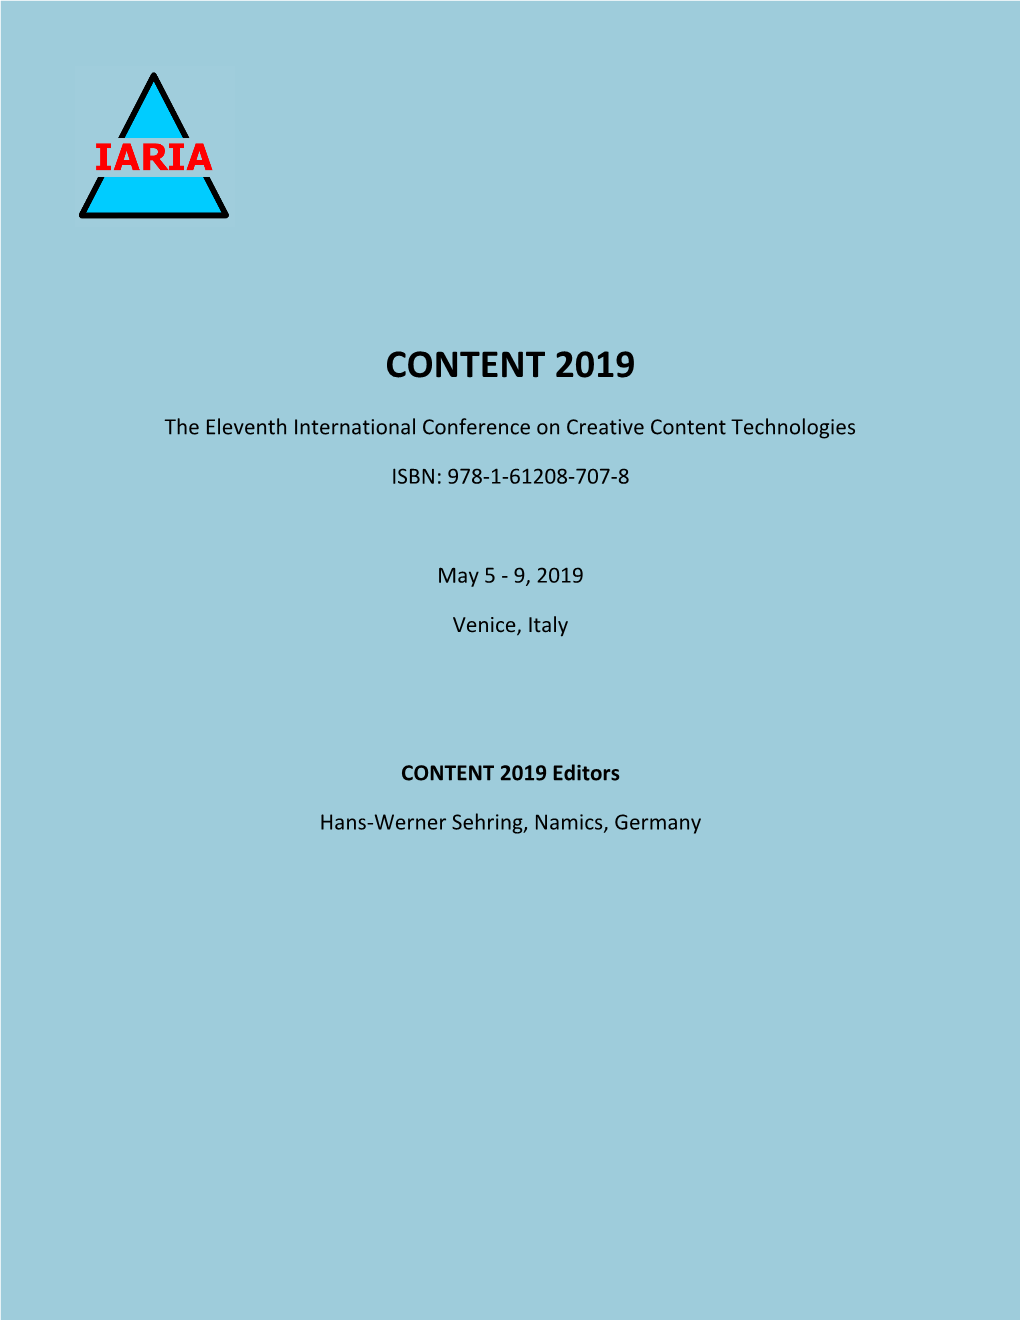 CONTENT 2019 Proceedings